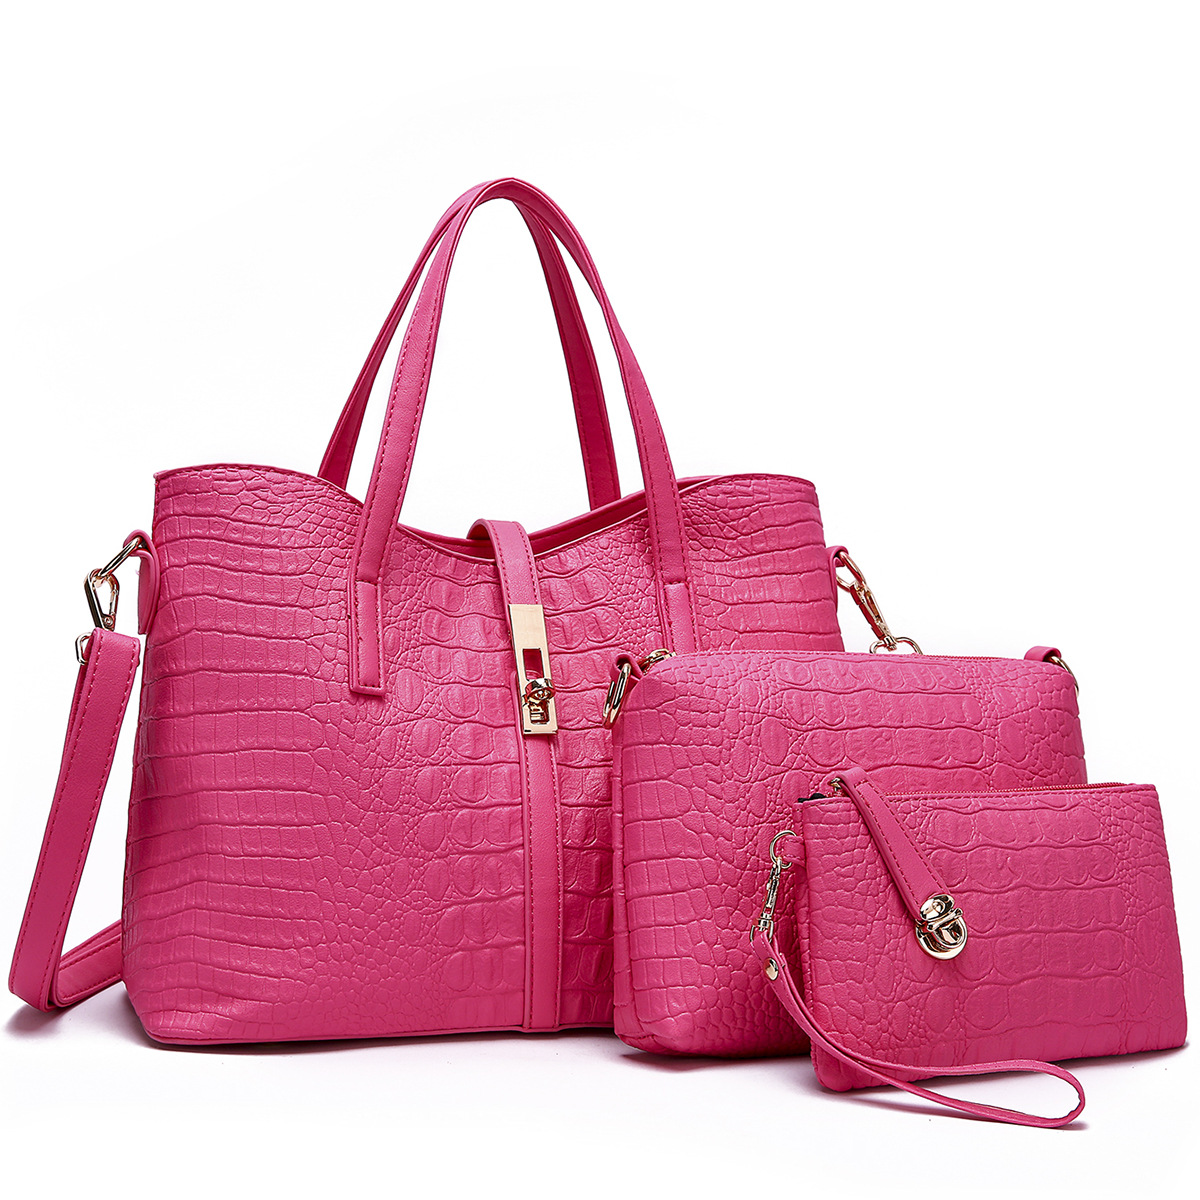 Crocodile🐊🐊🐊 pattern bag 🐳🐳🐳handbags 3 in 1 set 
#handbagset #handbags #handbagsforsale #handbagseller #handbagshop #handbagslover #handbagsale #handbag #handbagsonline #handbagstyle #handbagsales #shoulderbag #slingbag #handbagsmurah #handbagsetmurah #bag #handbagsling